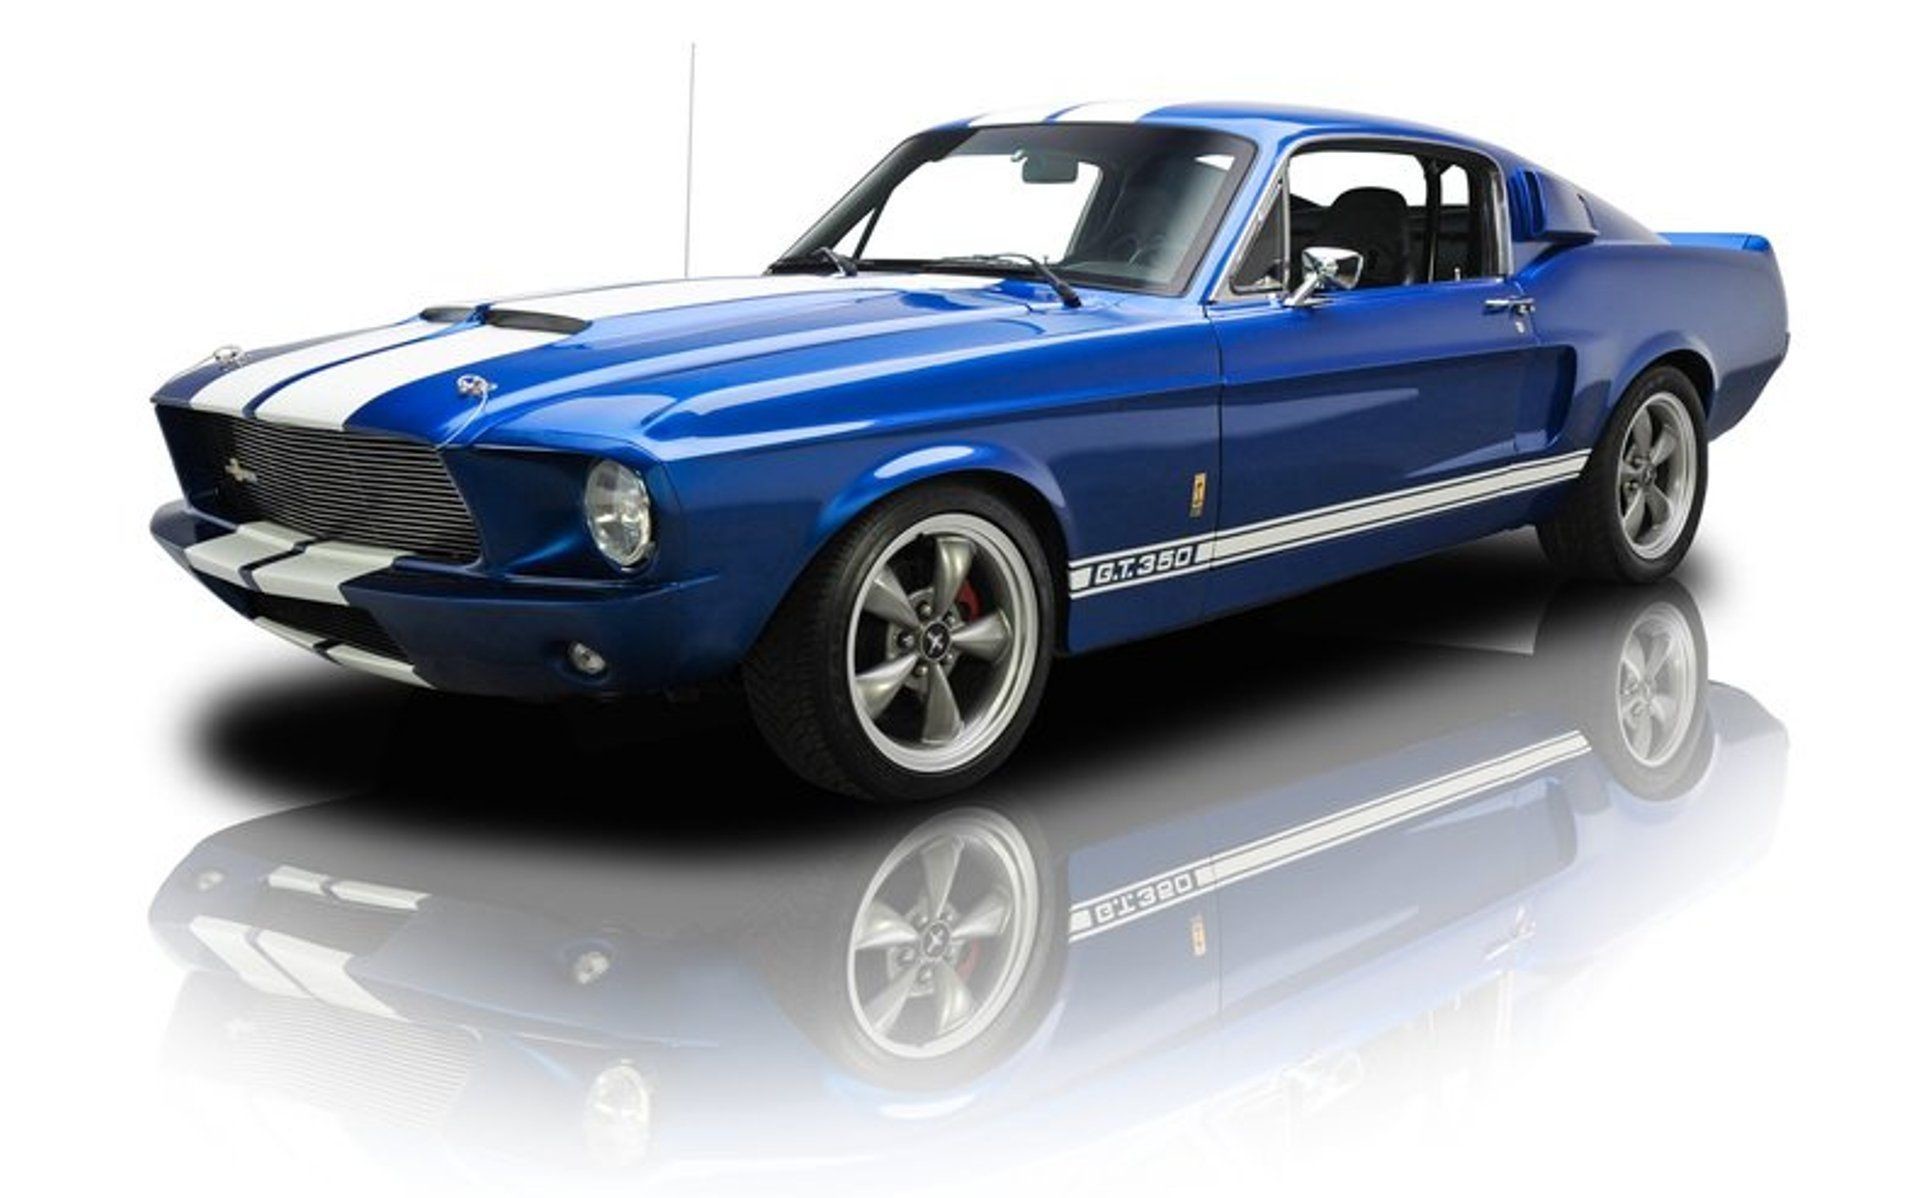 1920x1198 Mustang Shelby HD desktop wallpaper : High Definition : Fullscreen 1920Ã1198